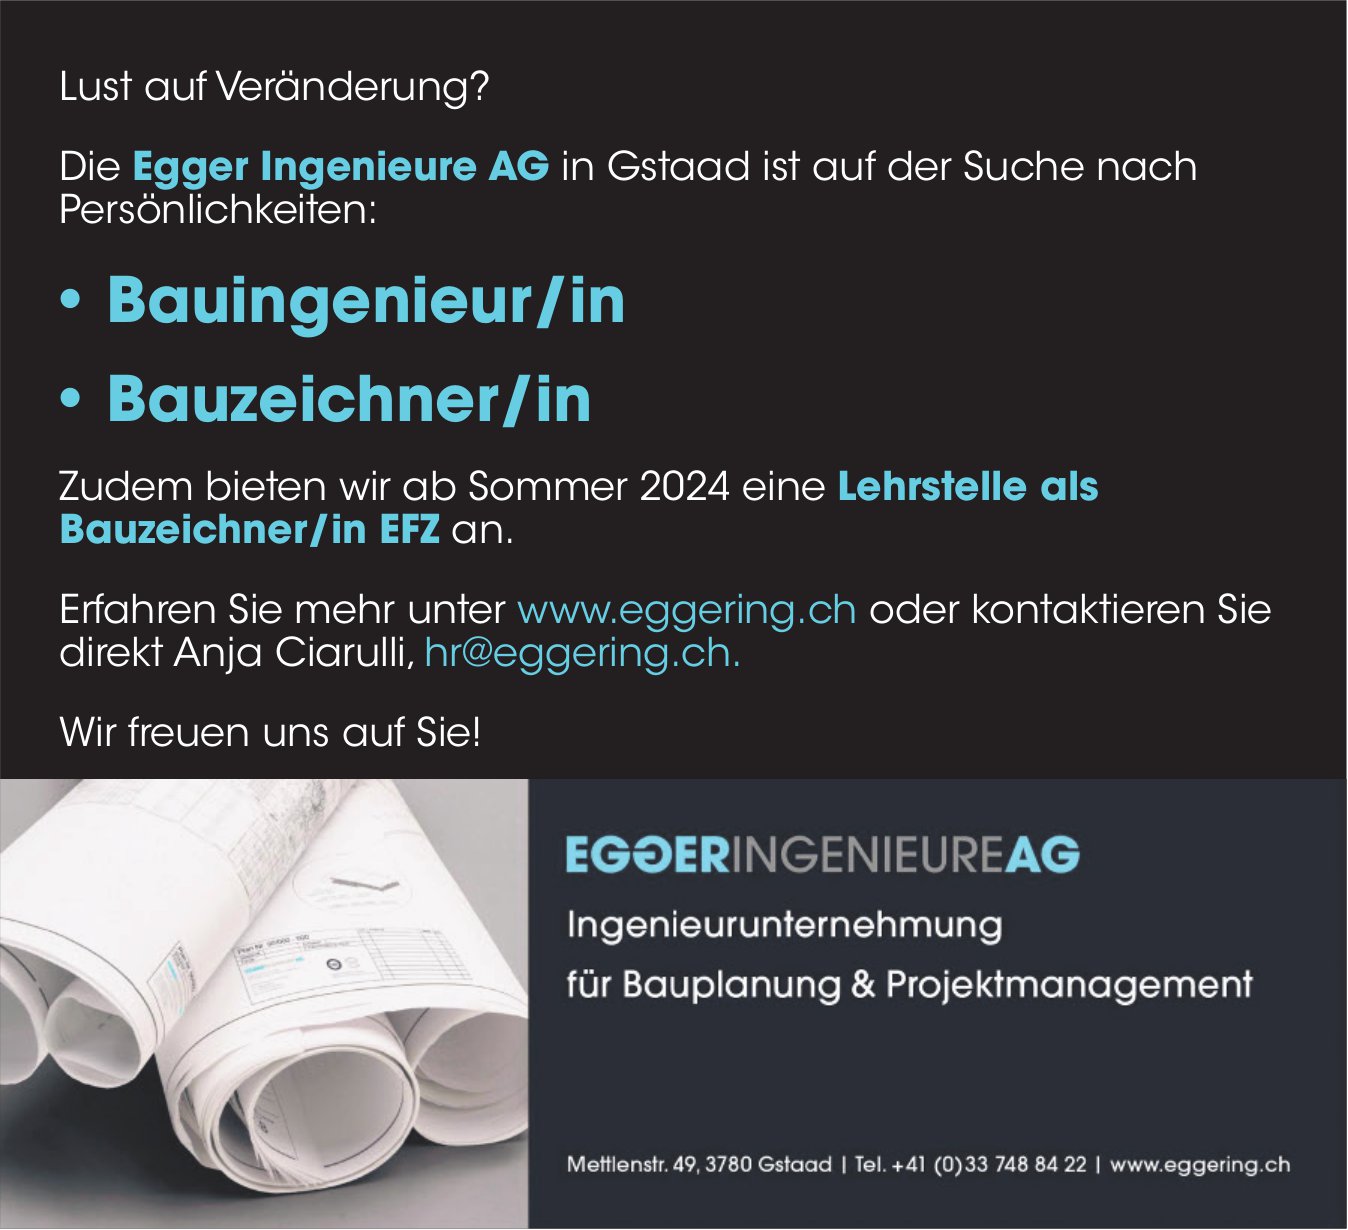 Bauingenieur/in, Bauzeichner/in, Egger Ingenieure AG, Gstaad,  gesucht